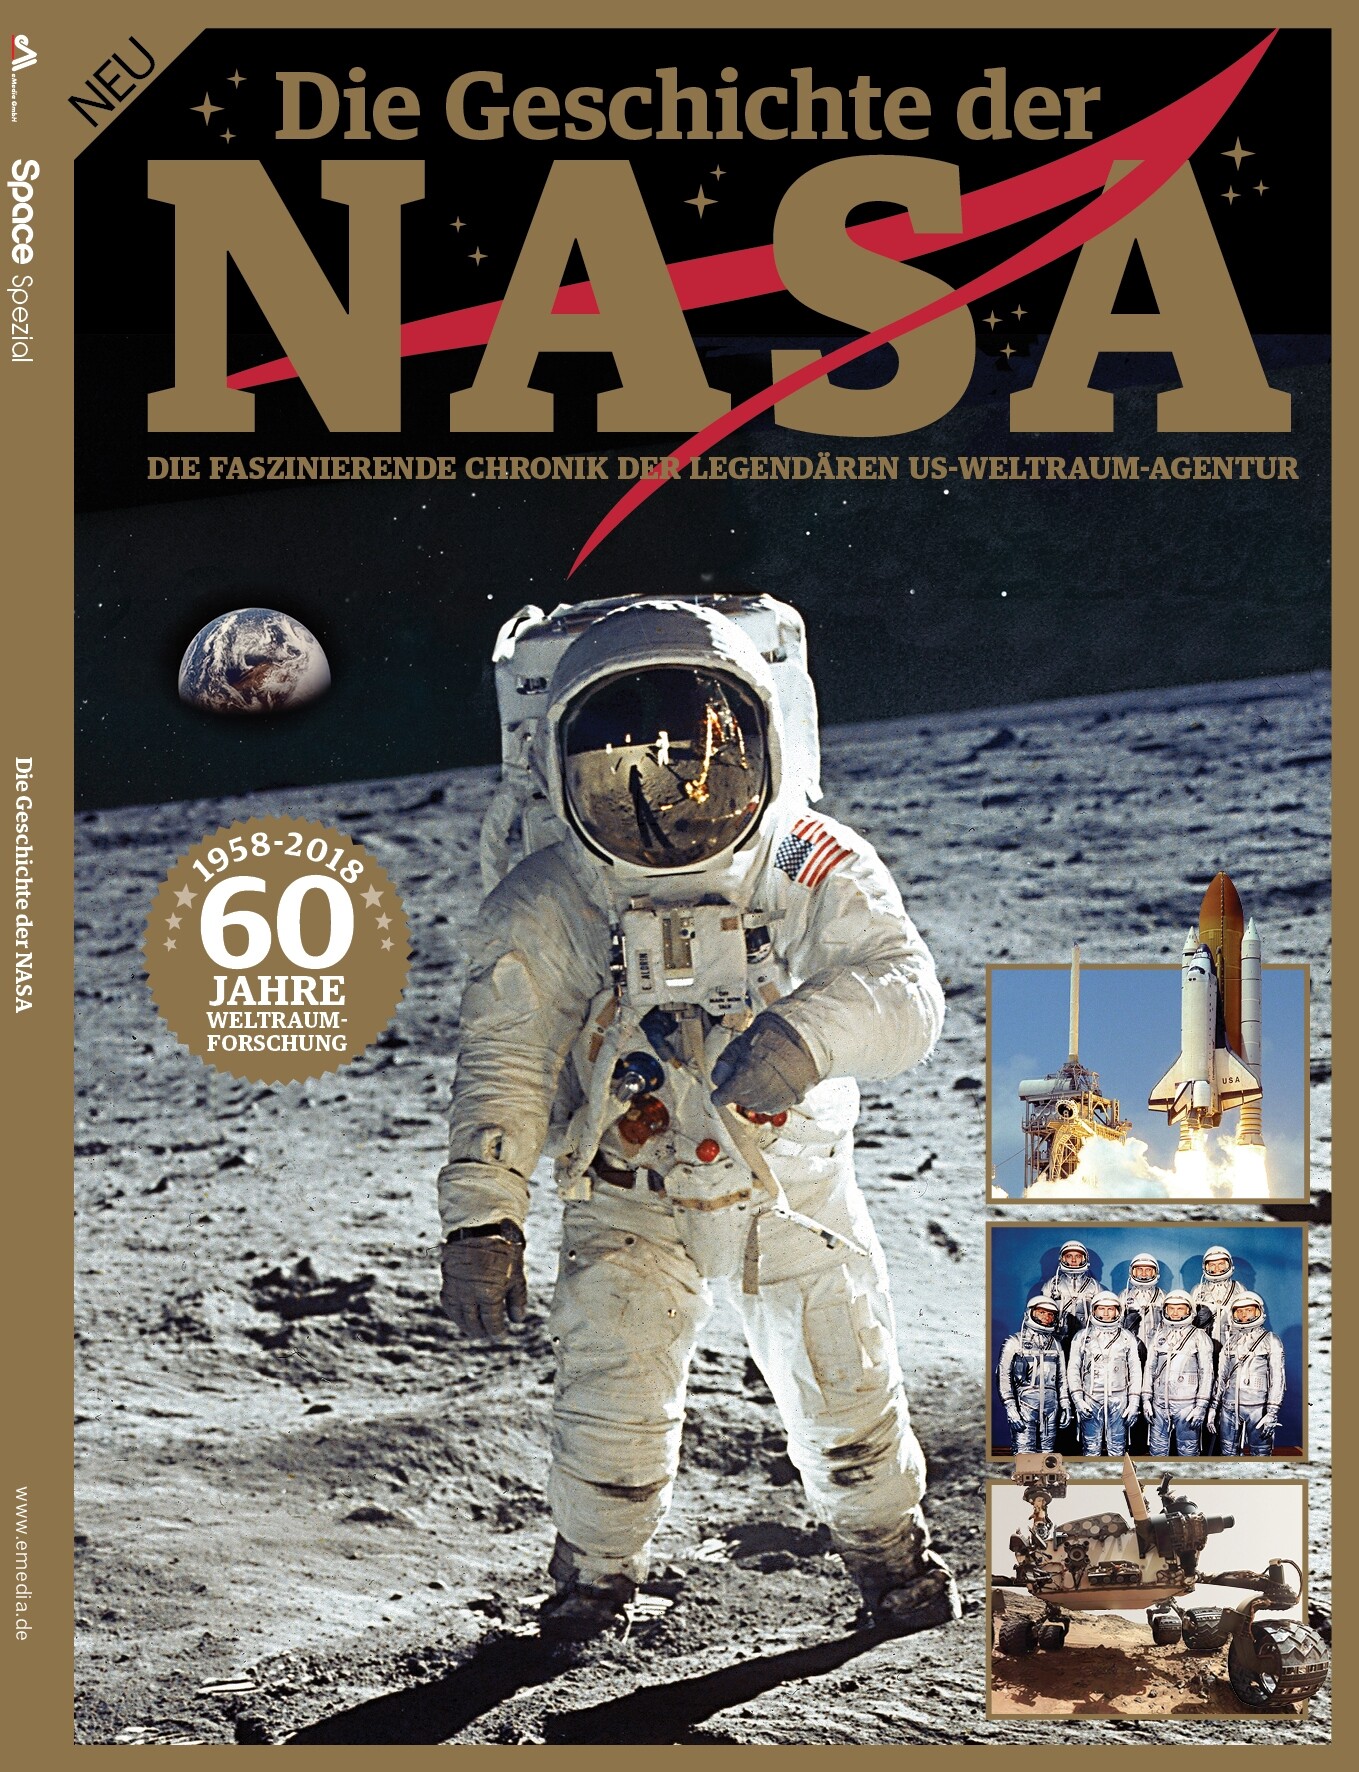 Space Spezial "Die Geschichte der NASA"